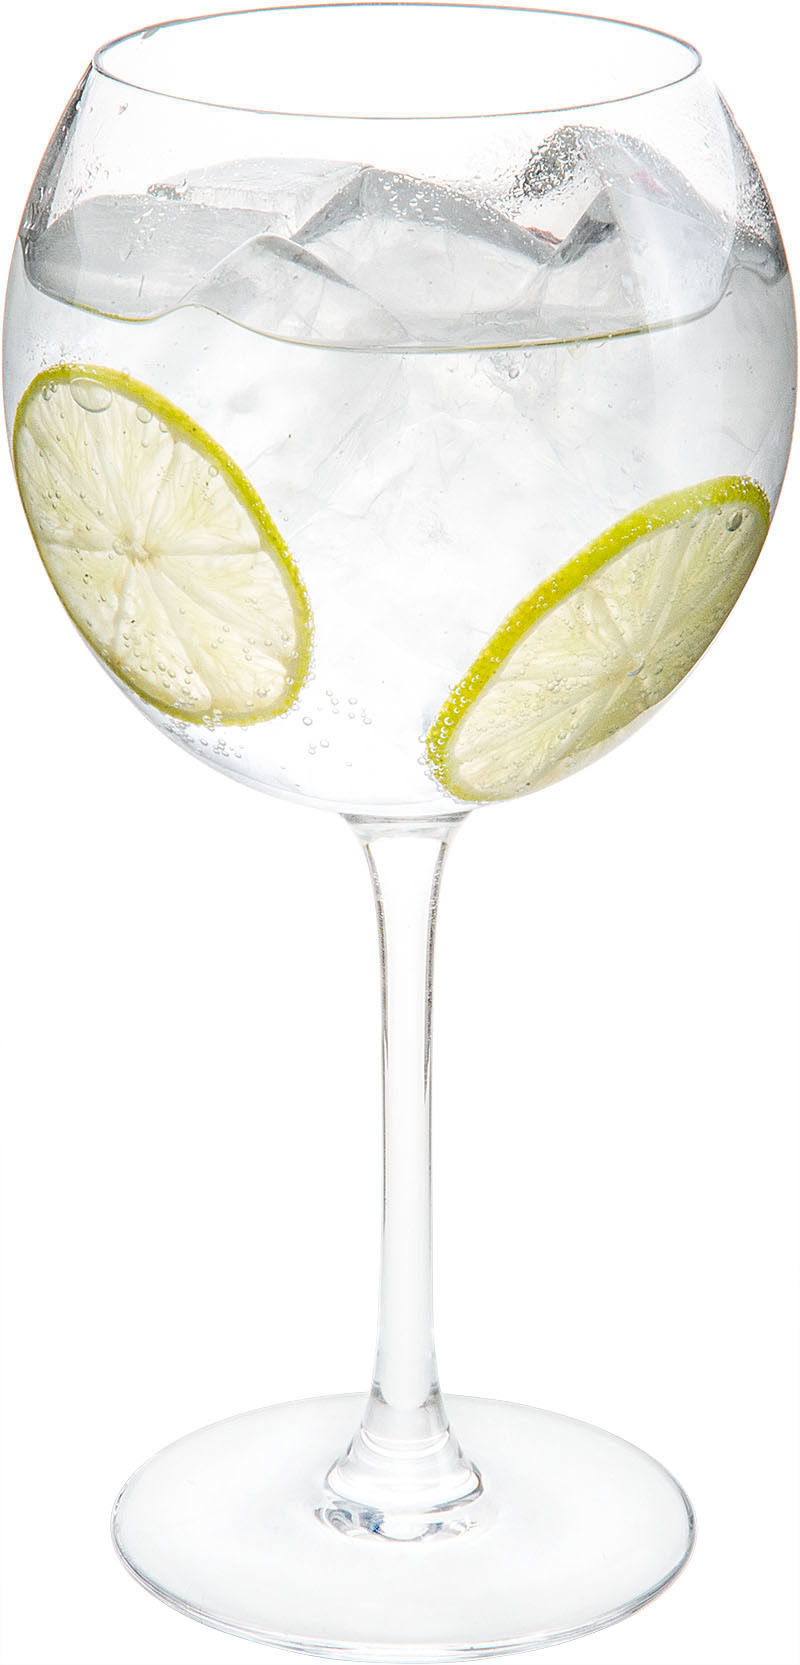 Comment préparer le cocktail Bianco Tonic